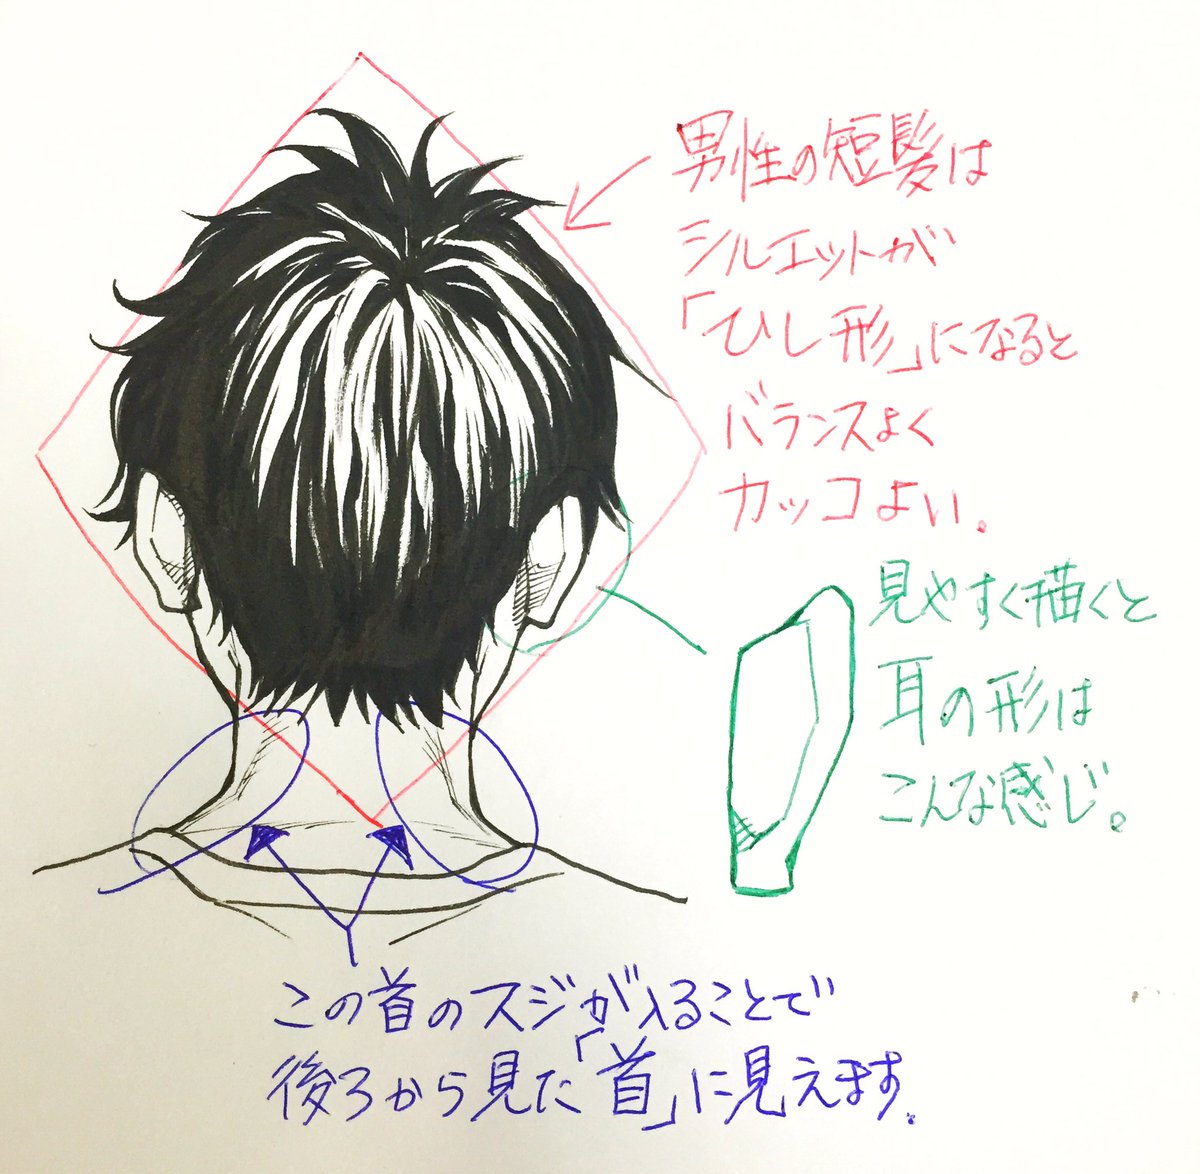 吉村拓也 イラスト講座 後頭部から首 の描き方 雑なしゃべり解説 音量が小さいですが 御勘弁を M M